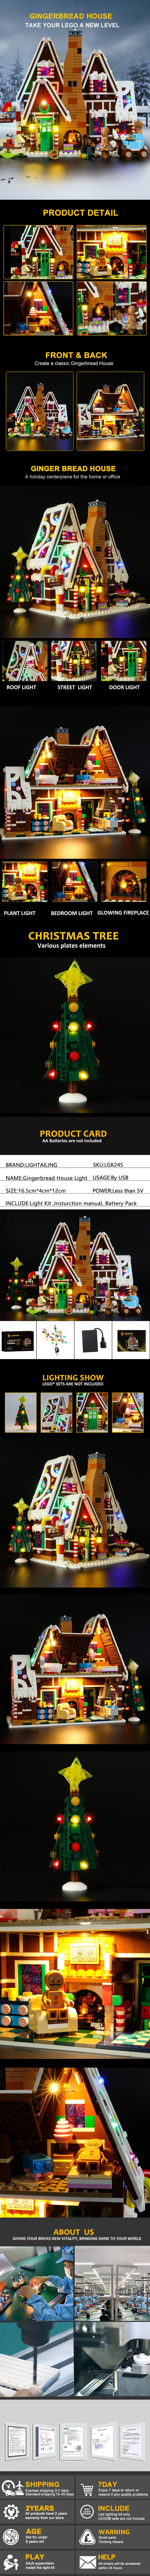 Casa de pan de jengibre 10267 kit de luces lego